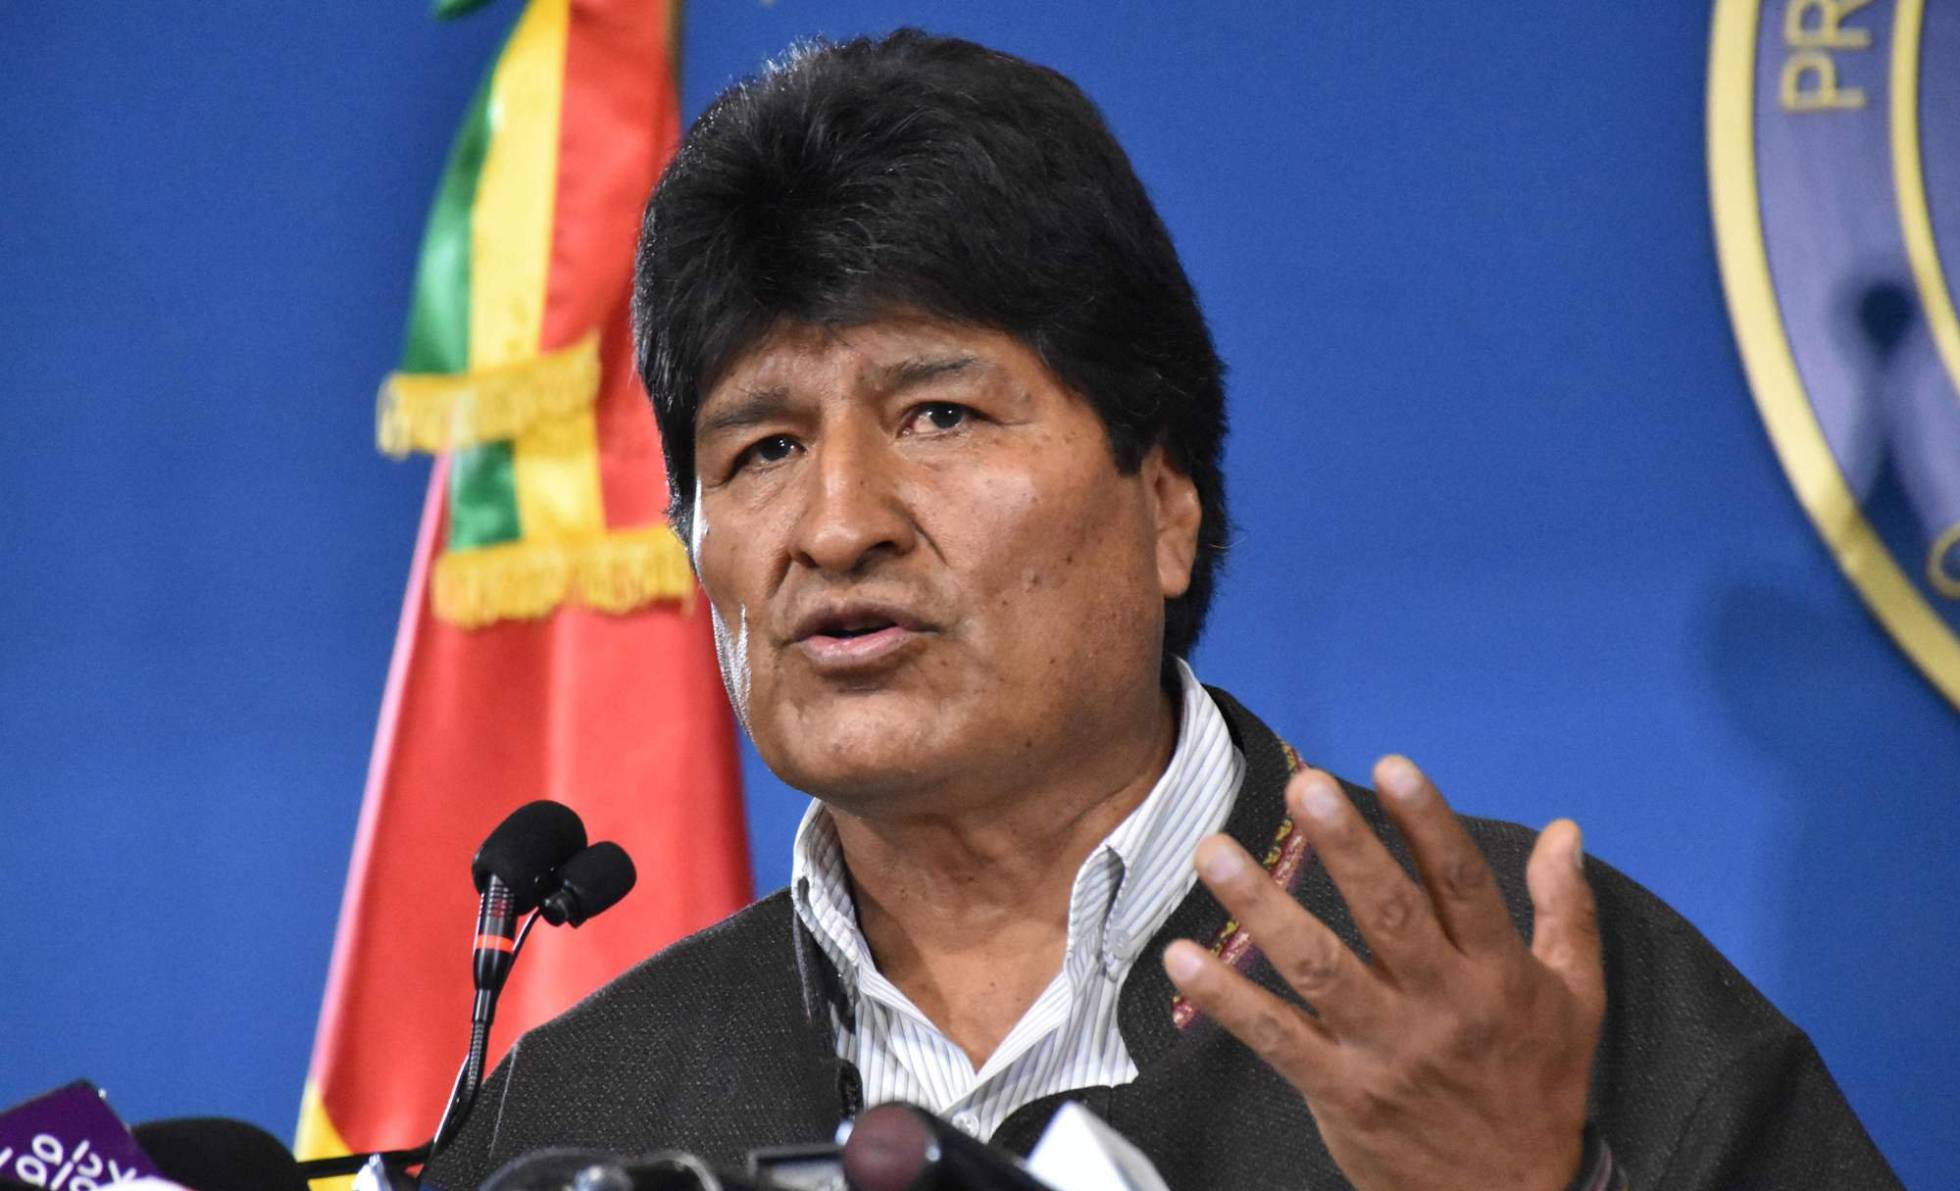 Evo Morales recibe asilo político en México con el argumento de que su vida “corre riesgo” en Bolivia